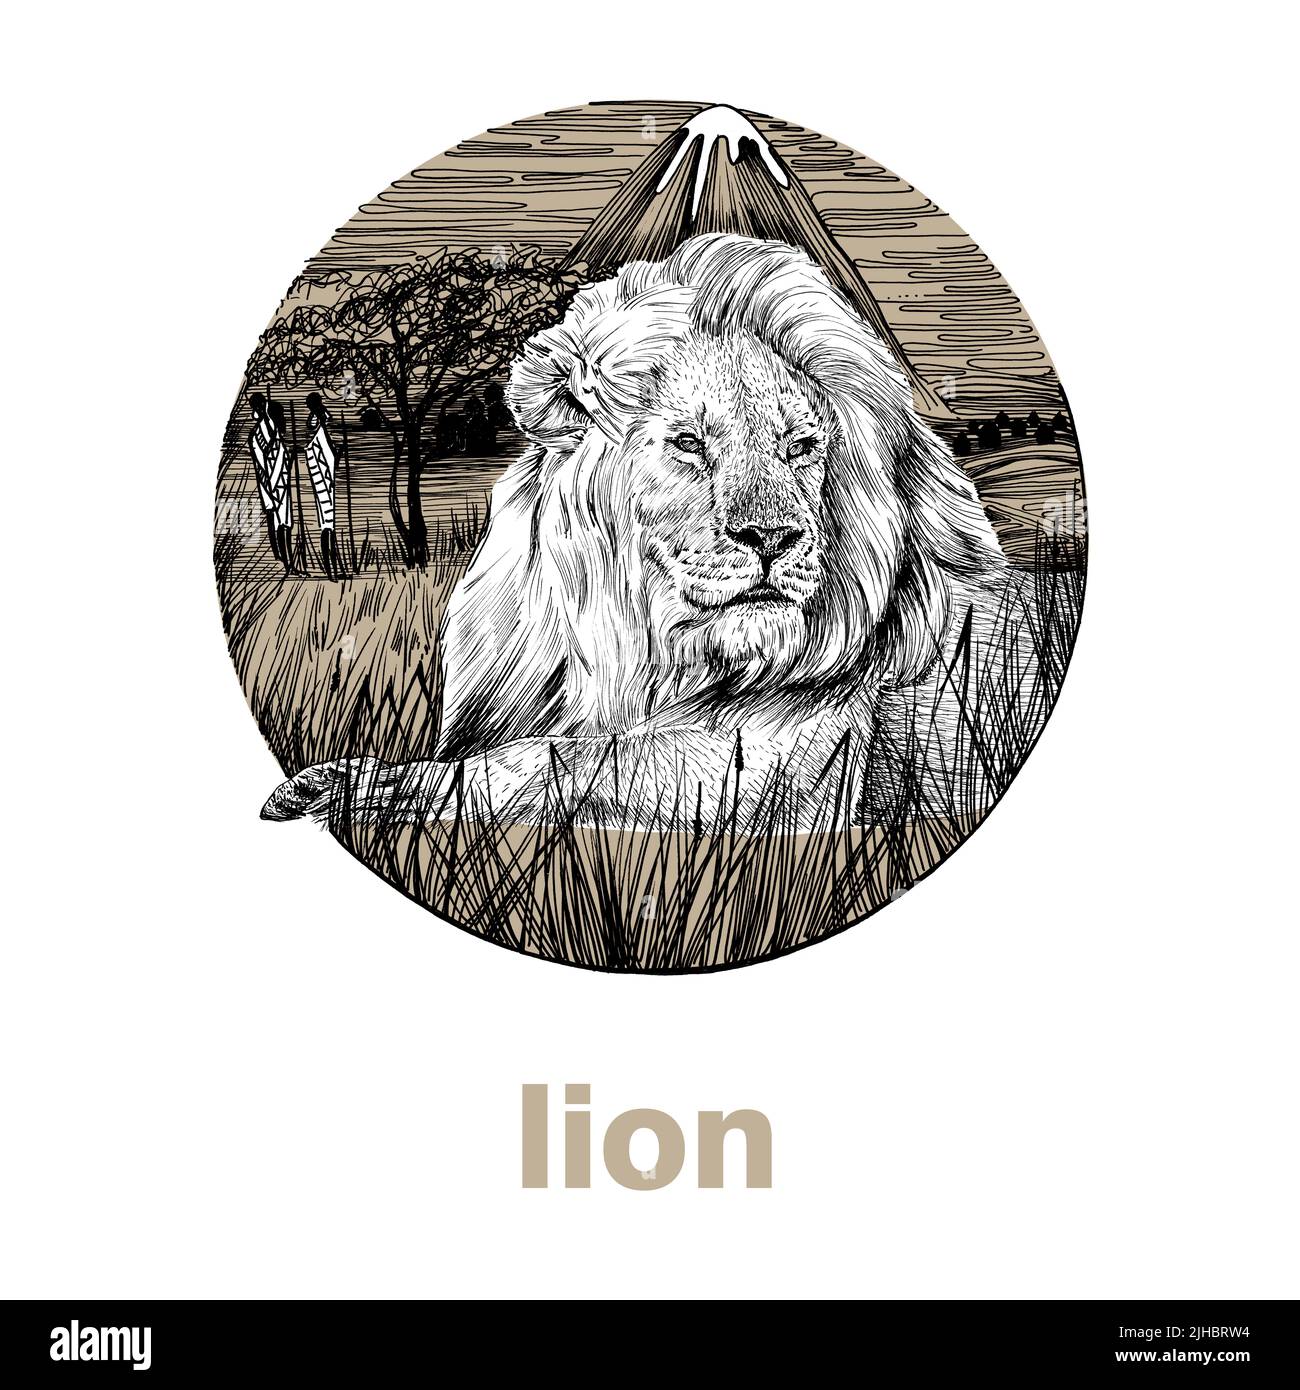 Lion dessiné à la main, illustration de graphiques d'esquisse sur fond blanc (originaux, pas de tracé) Banque D'Images